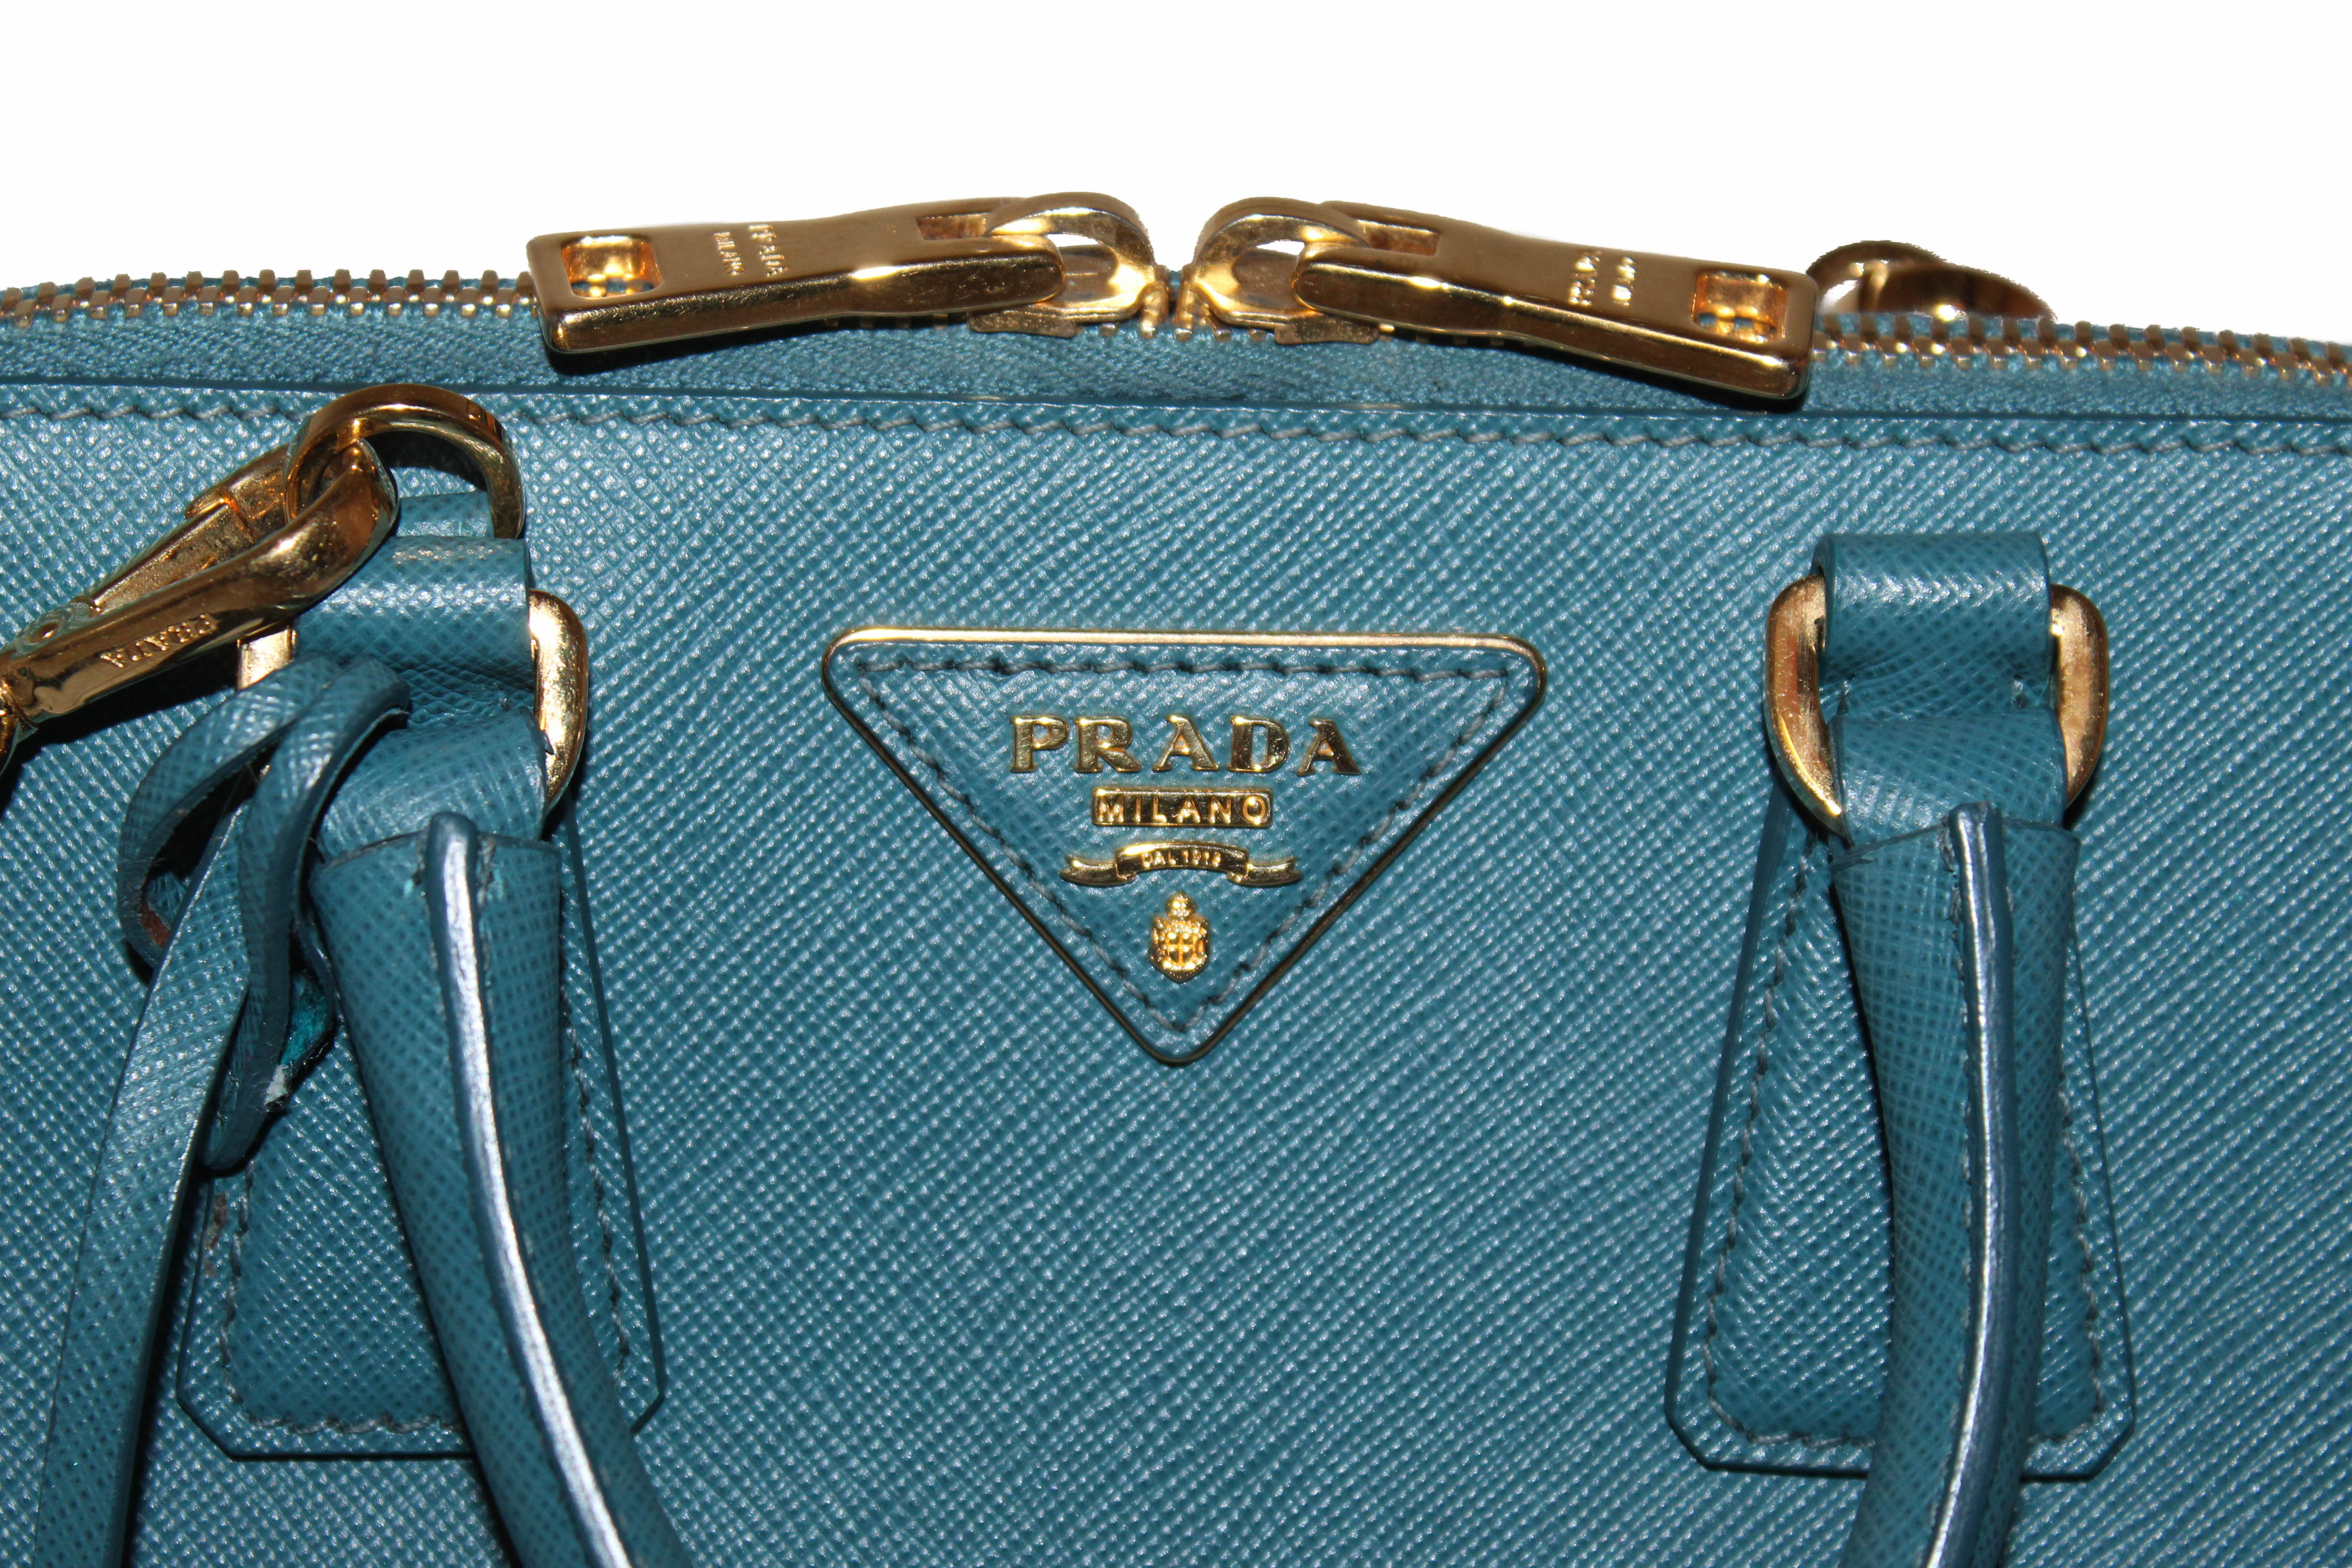 Prada mini promenade saffiano luxe bag